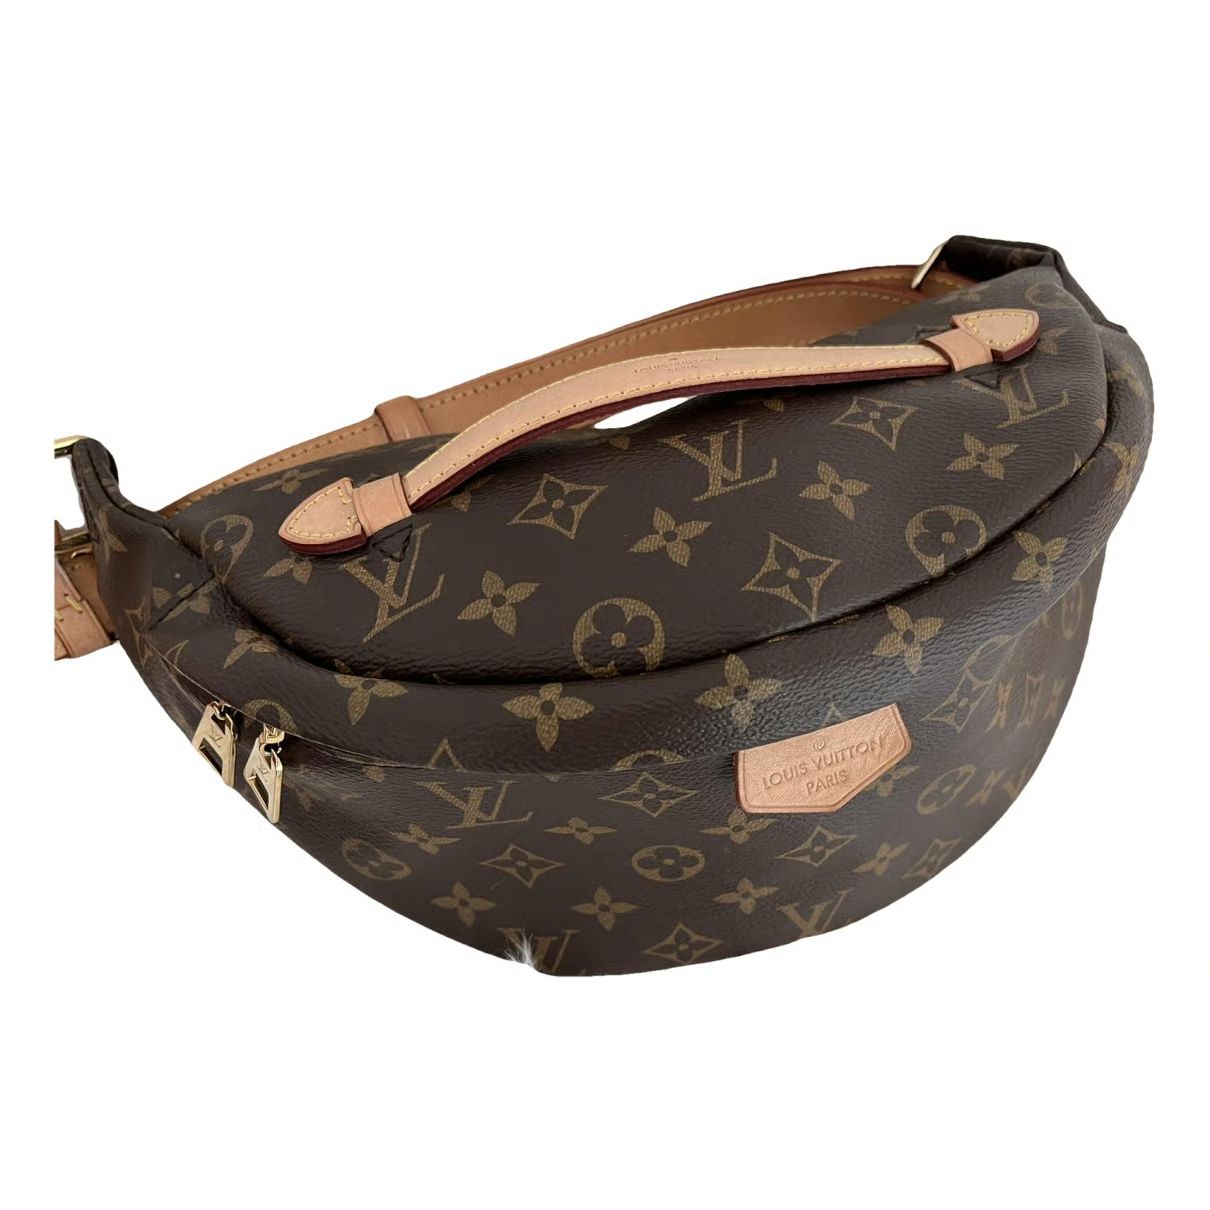 Louis Vuitton Bum Bag / Sac Ceinture patent leather handbag | Vestiaire Collective (Global)